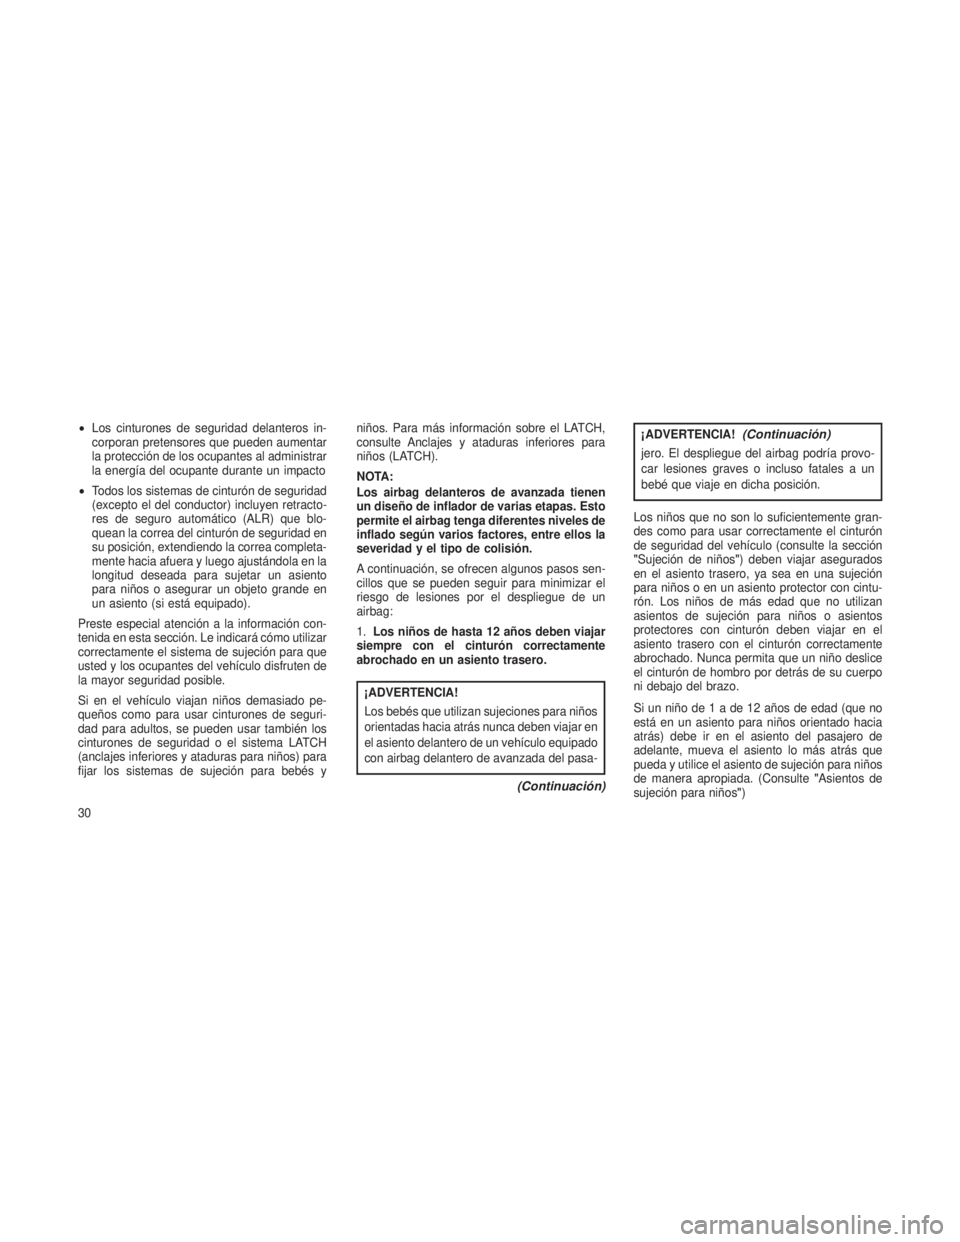 JEEP PATRIOT 2019  Manual de Empleo y Cuidado (in Spanish) •Los cinturones de seguridad delanteros in-
corporan pretensores que pueden aumentar
la protección de los ocupantes al administrar
la energía del ocupante durante un impacto
• Todos los sistemas